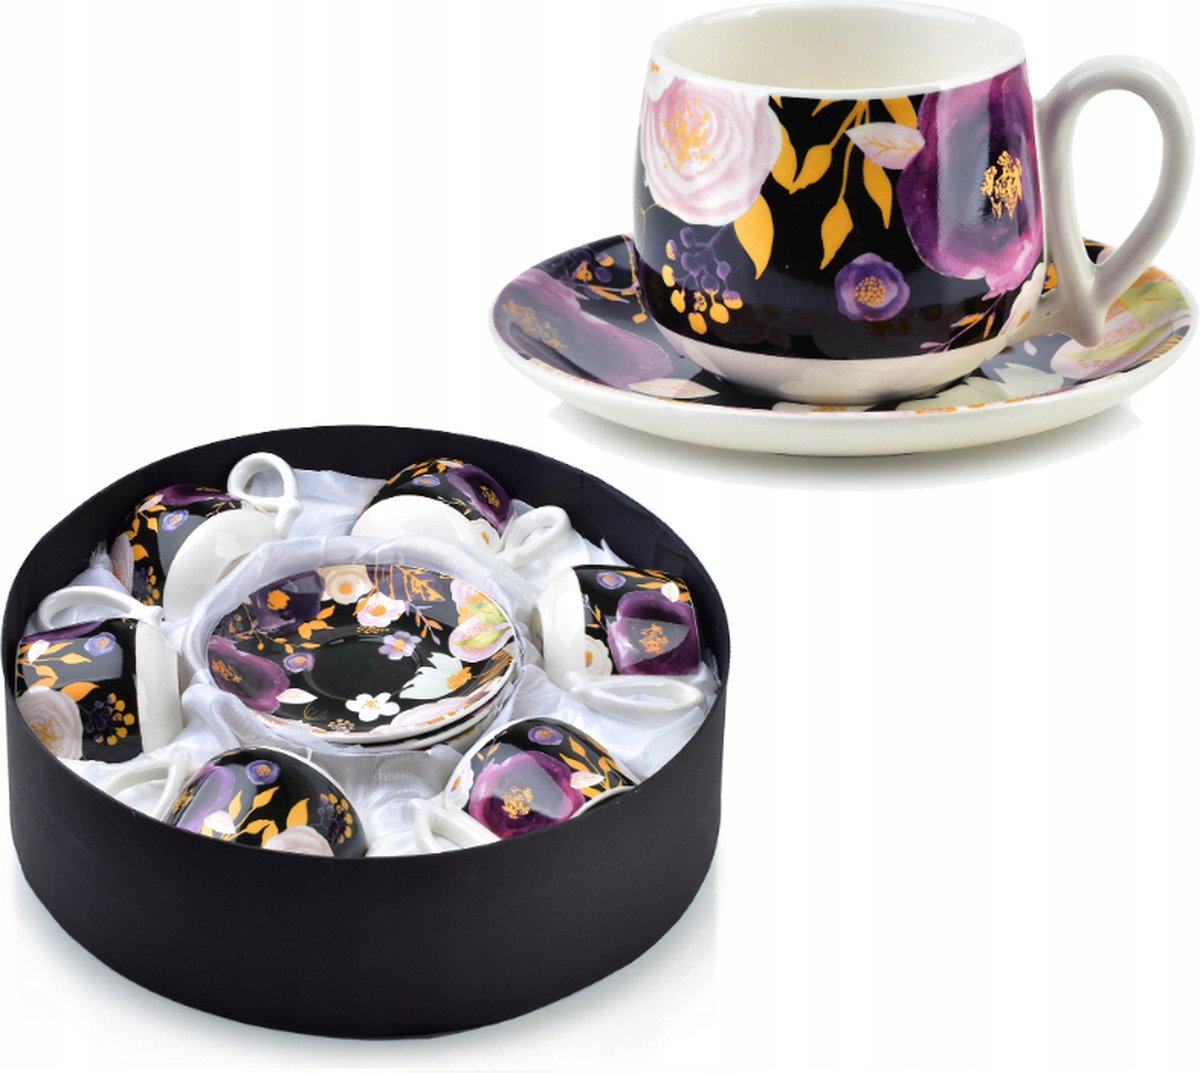 Affekdesign Monica porseleinen thee koffie kopjes set inclusief schoteltjes in geschenkverpakking bloem versiering - 6 stuks - unieke decoratie - prachtig design